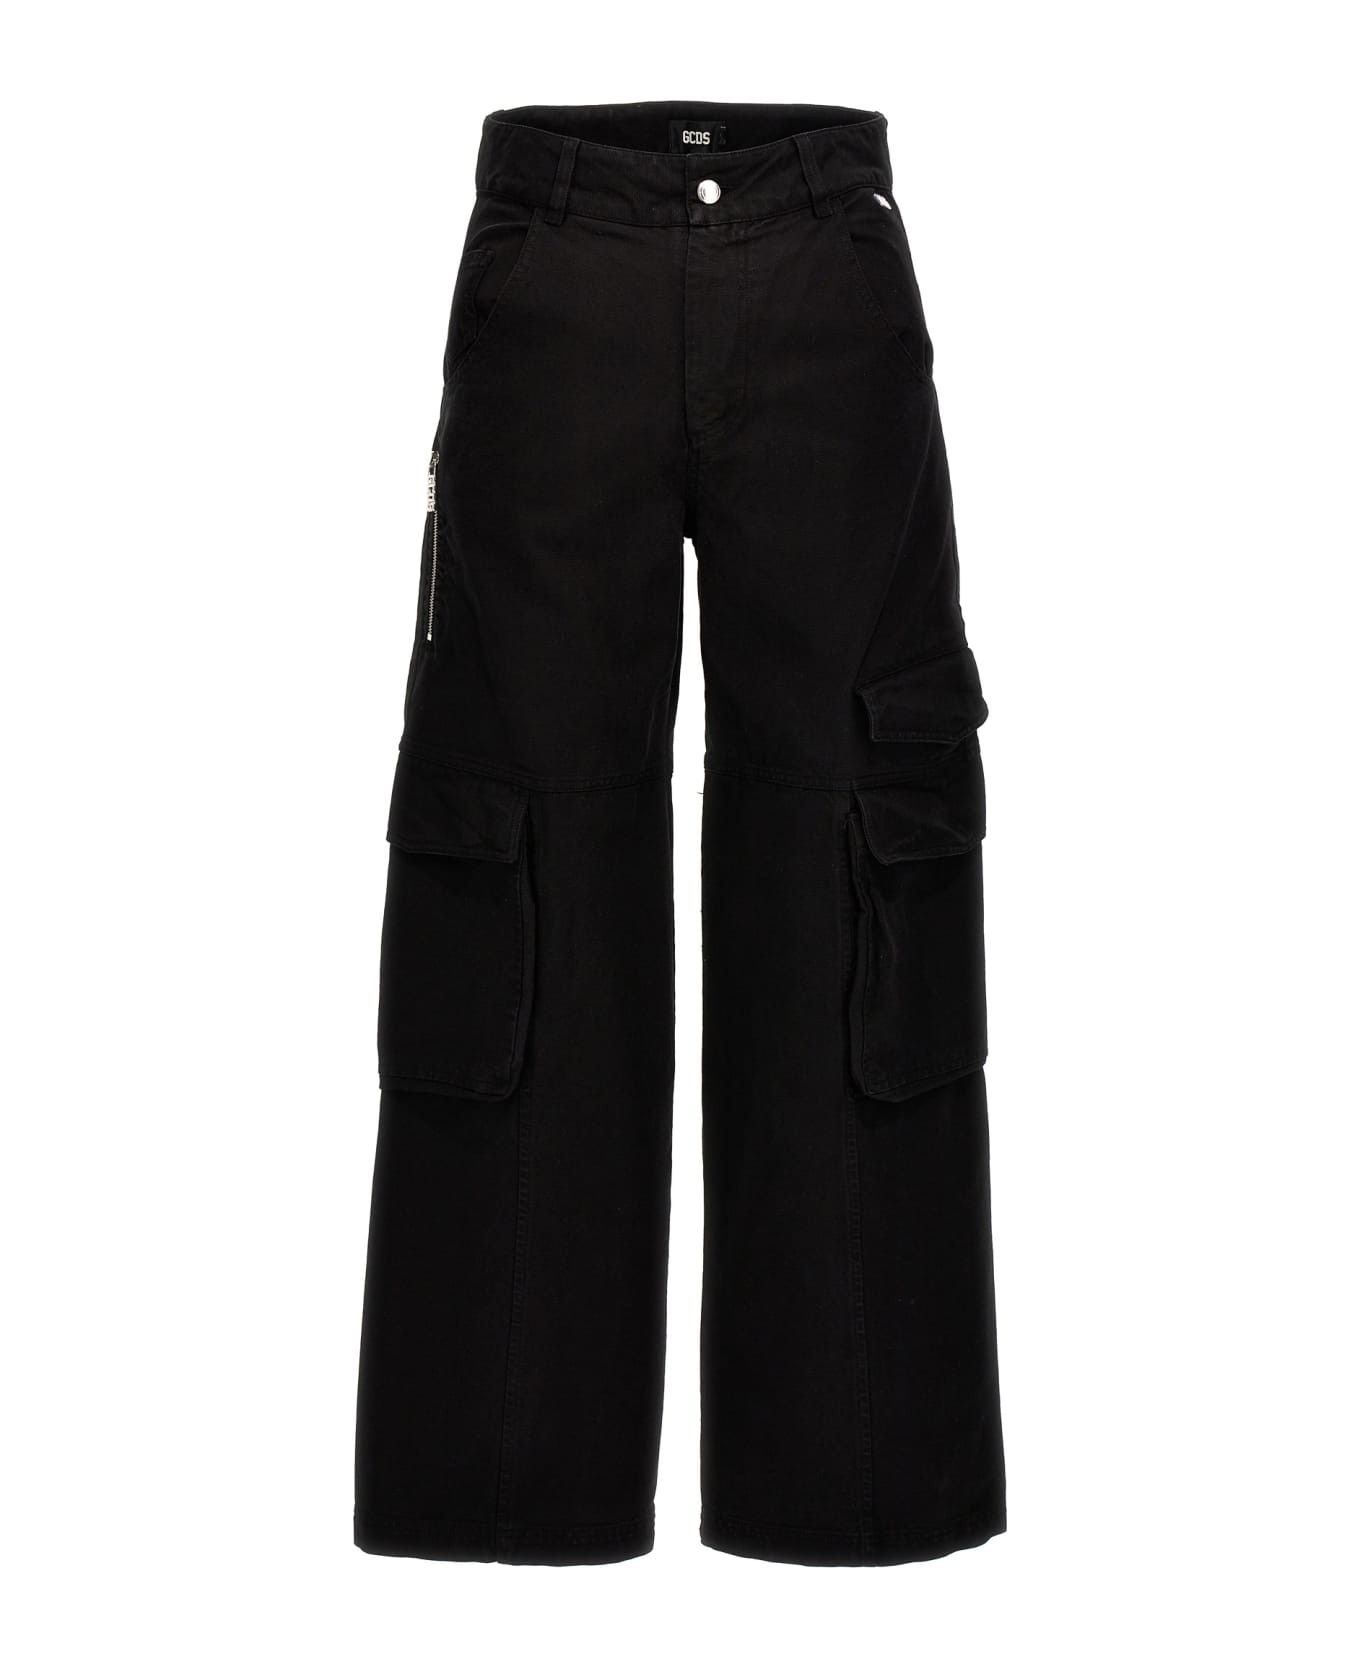 GCDS 'ultracargo' Jeans - Black  